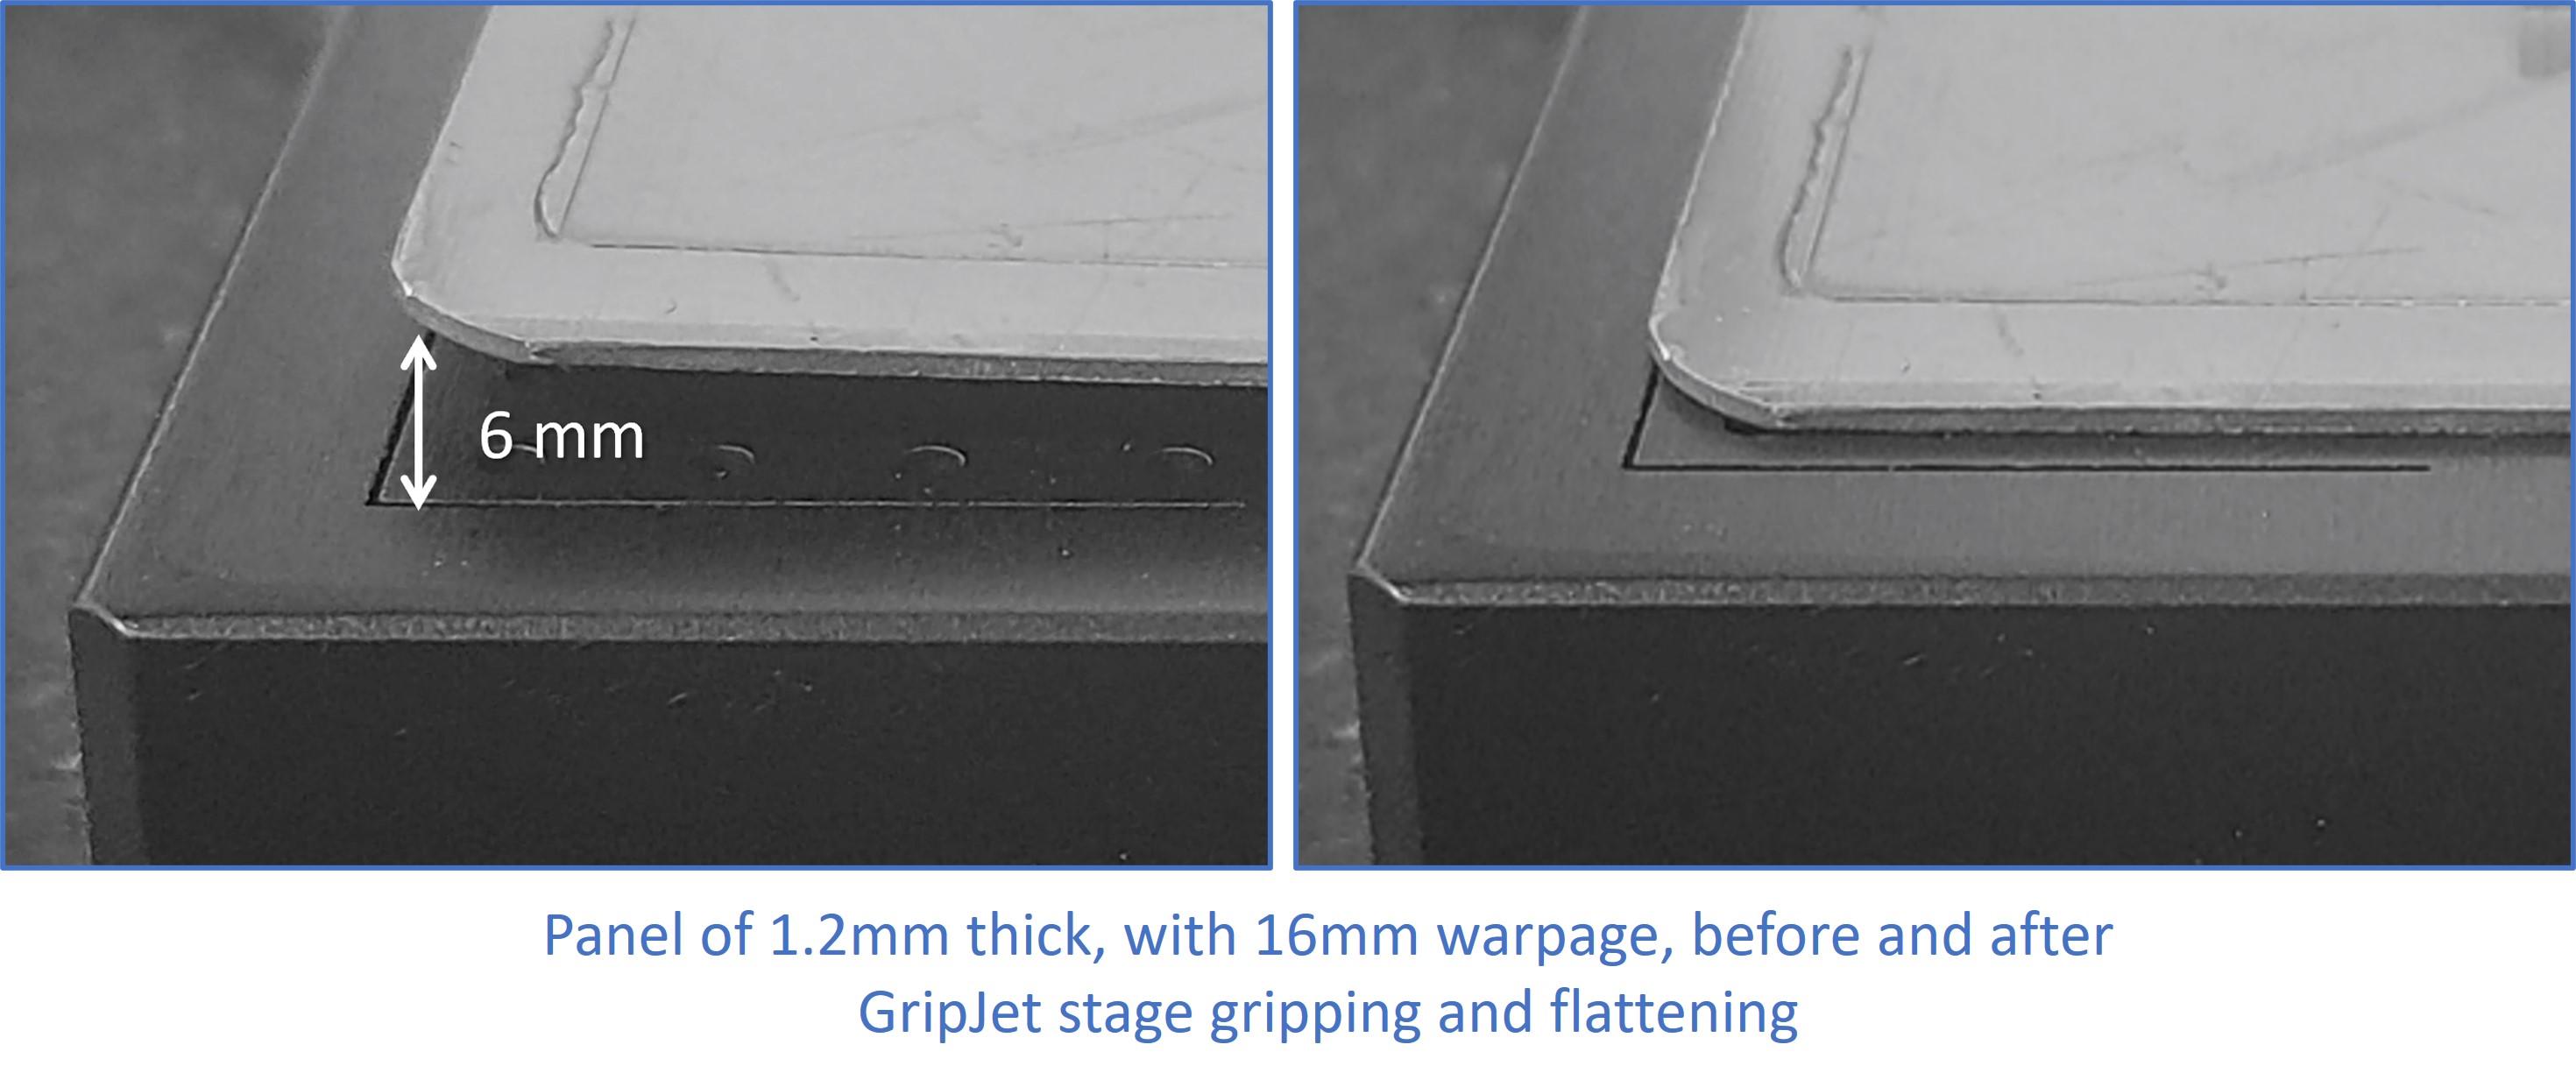 GripJet Stage with 6mm warpe